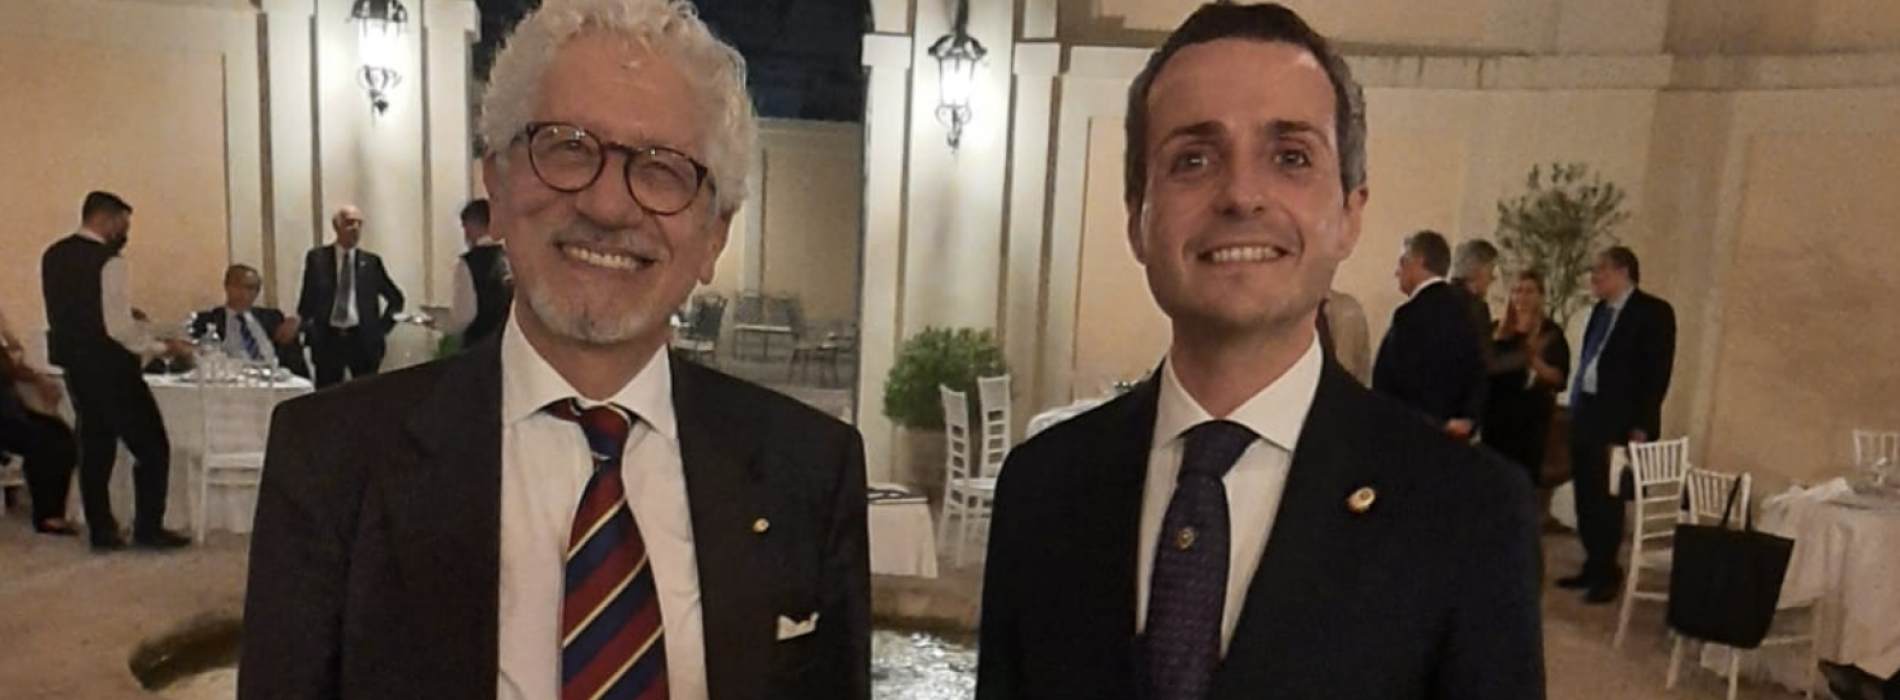 Nuovo presidente Lions Reloaded a Caserta, è Aldo Cobianchi